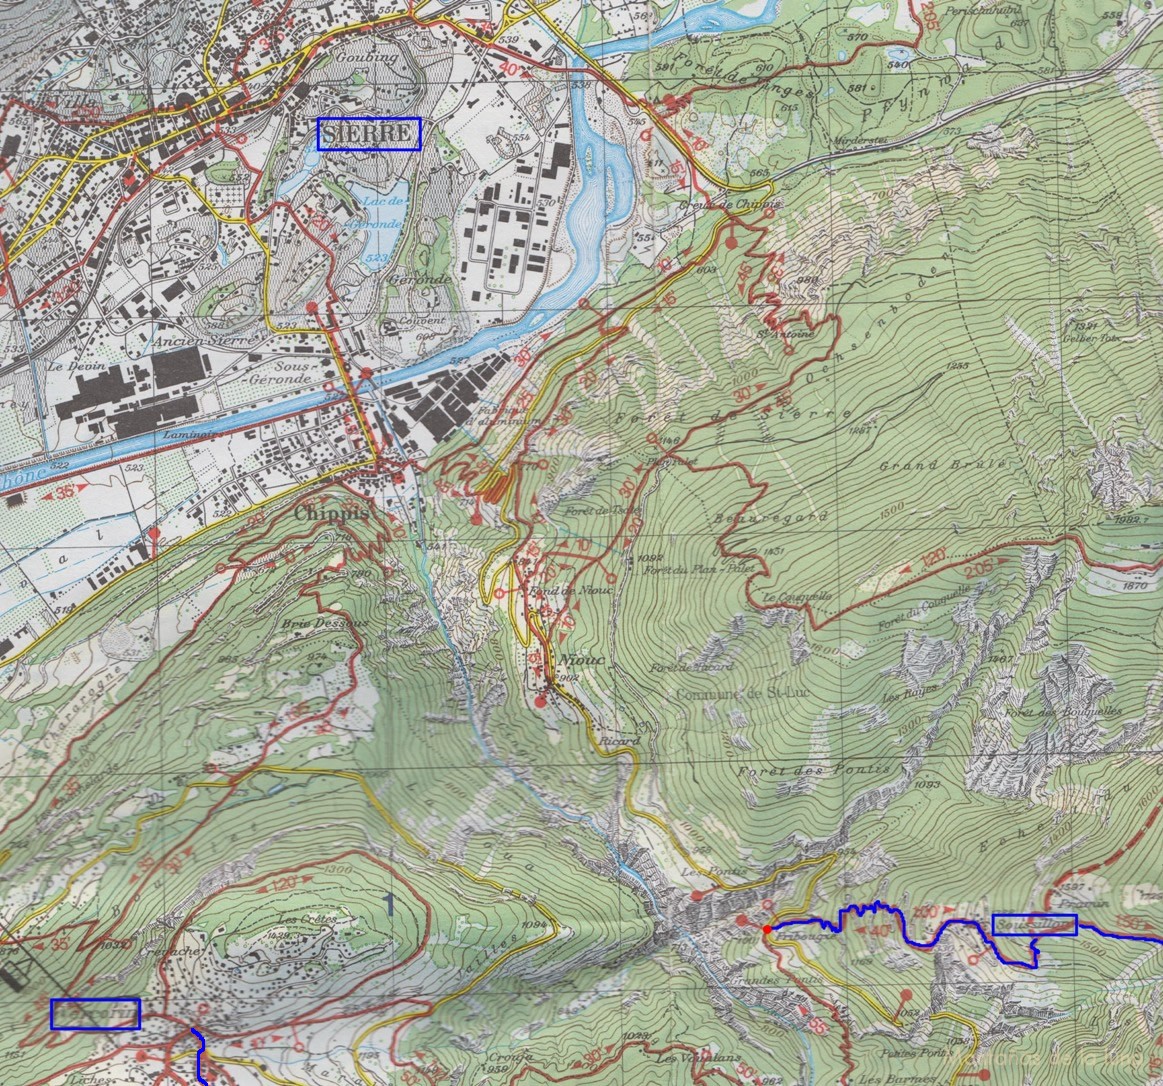 Croquis y mapa donde aparece la última población del Tour de la Val d'Anniviers, Vercorín, y Sierre, a la que llegamos en autobús desde la anterior población. Aparece el comienzo de la 1º Etapa con la subida a Soussillon desde la carretera, a la derecha.